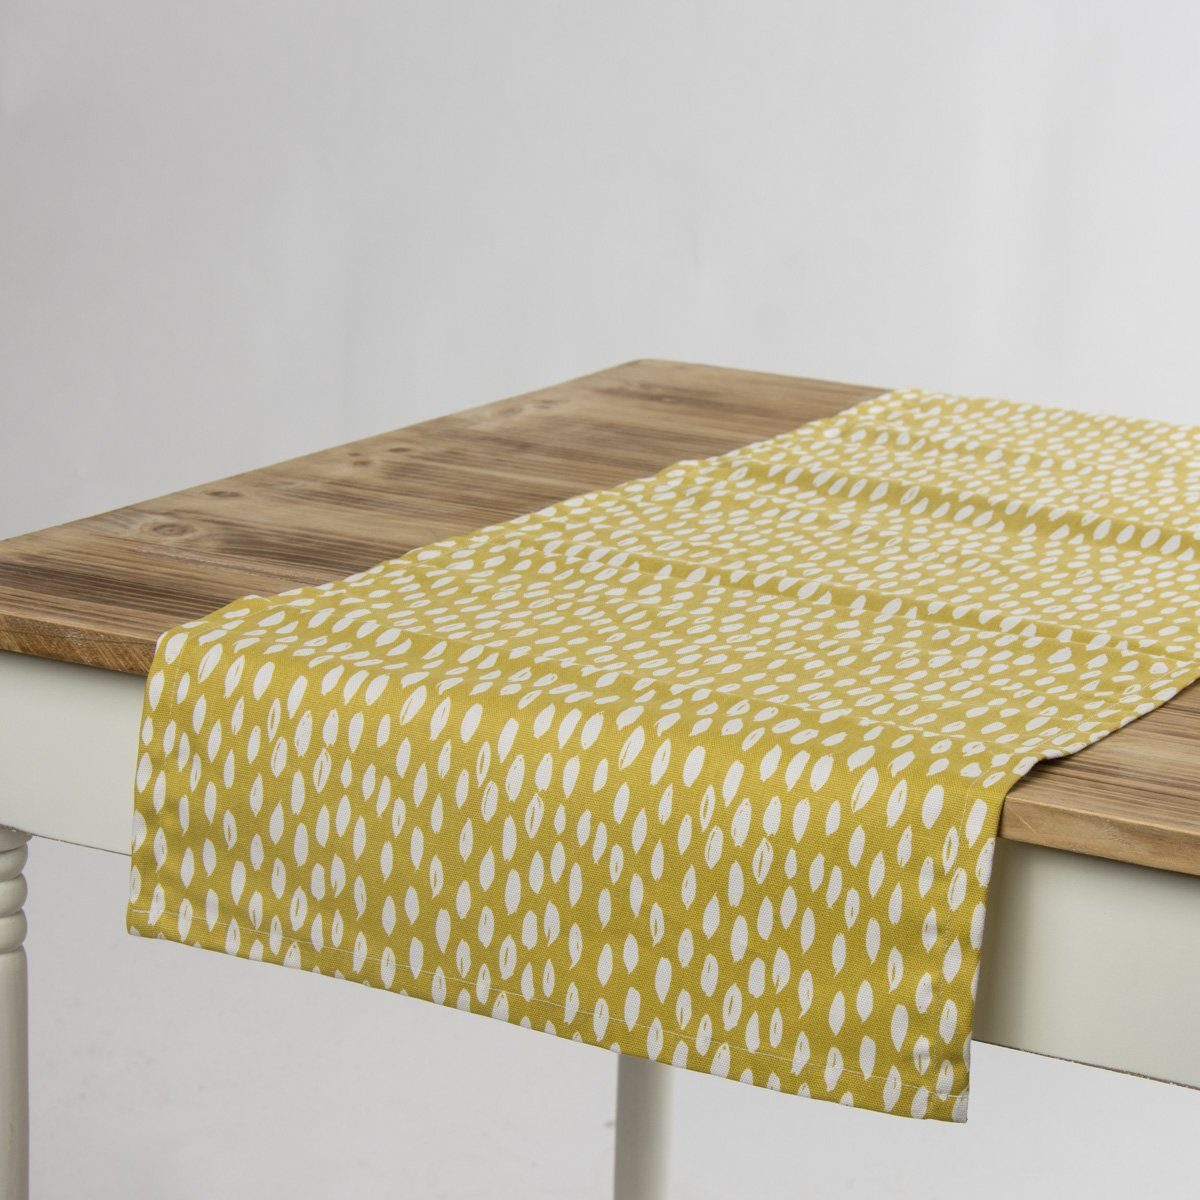 SCHÖNER LEBEN. Tischläufer Schöner Leben Tischläufer Bayside Honeydew ocker gelb weiß 40x160cm, handmade